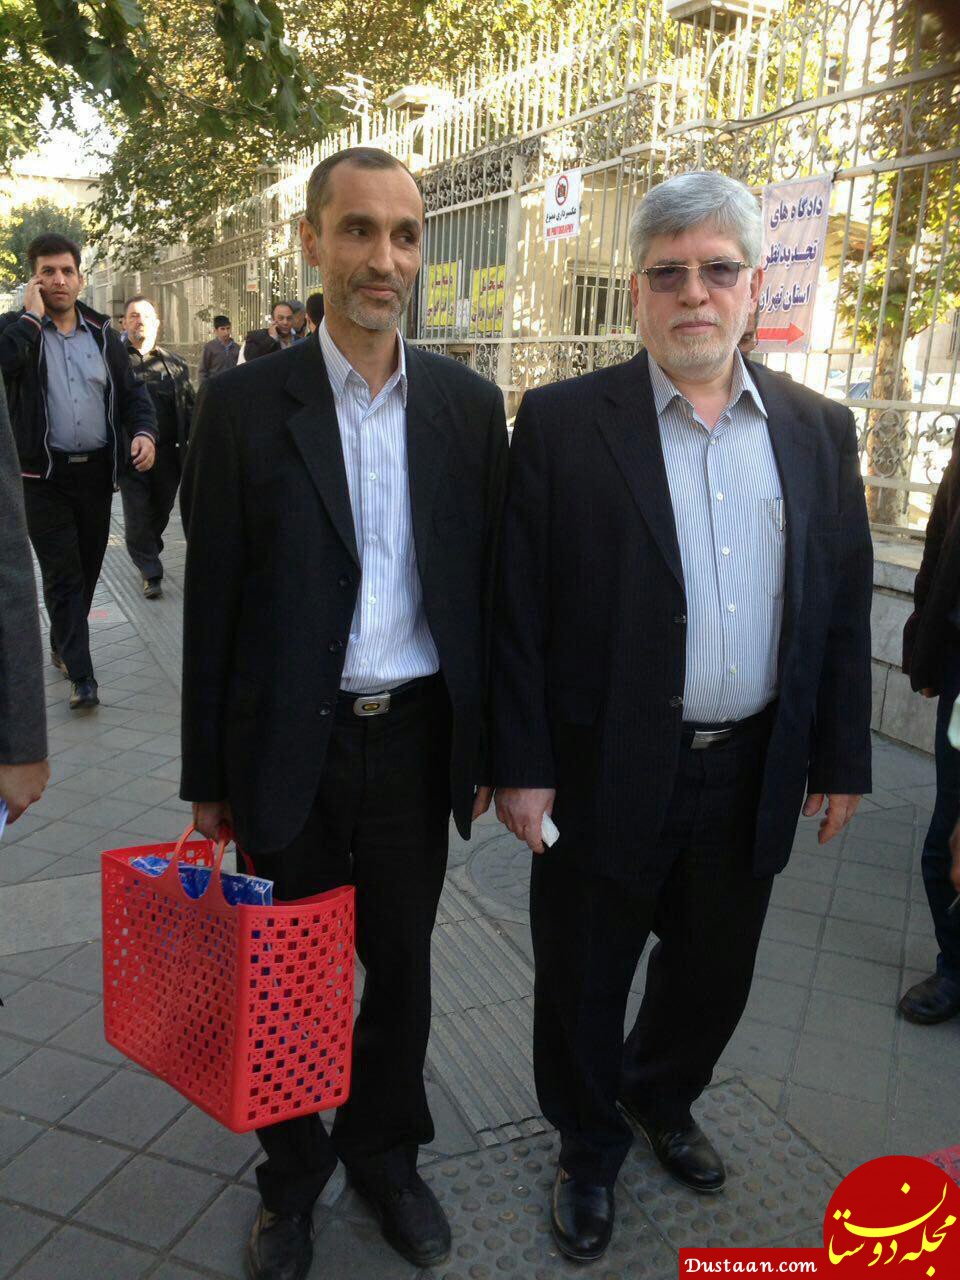 www.dustaan.com - تصادفی که معاون احمدی نژاد را لو داد